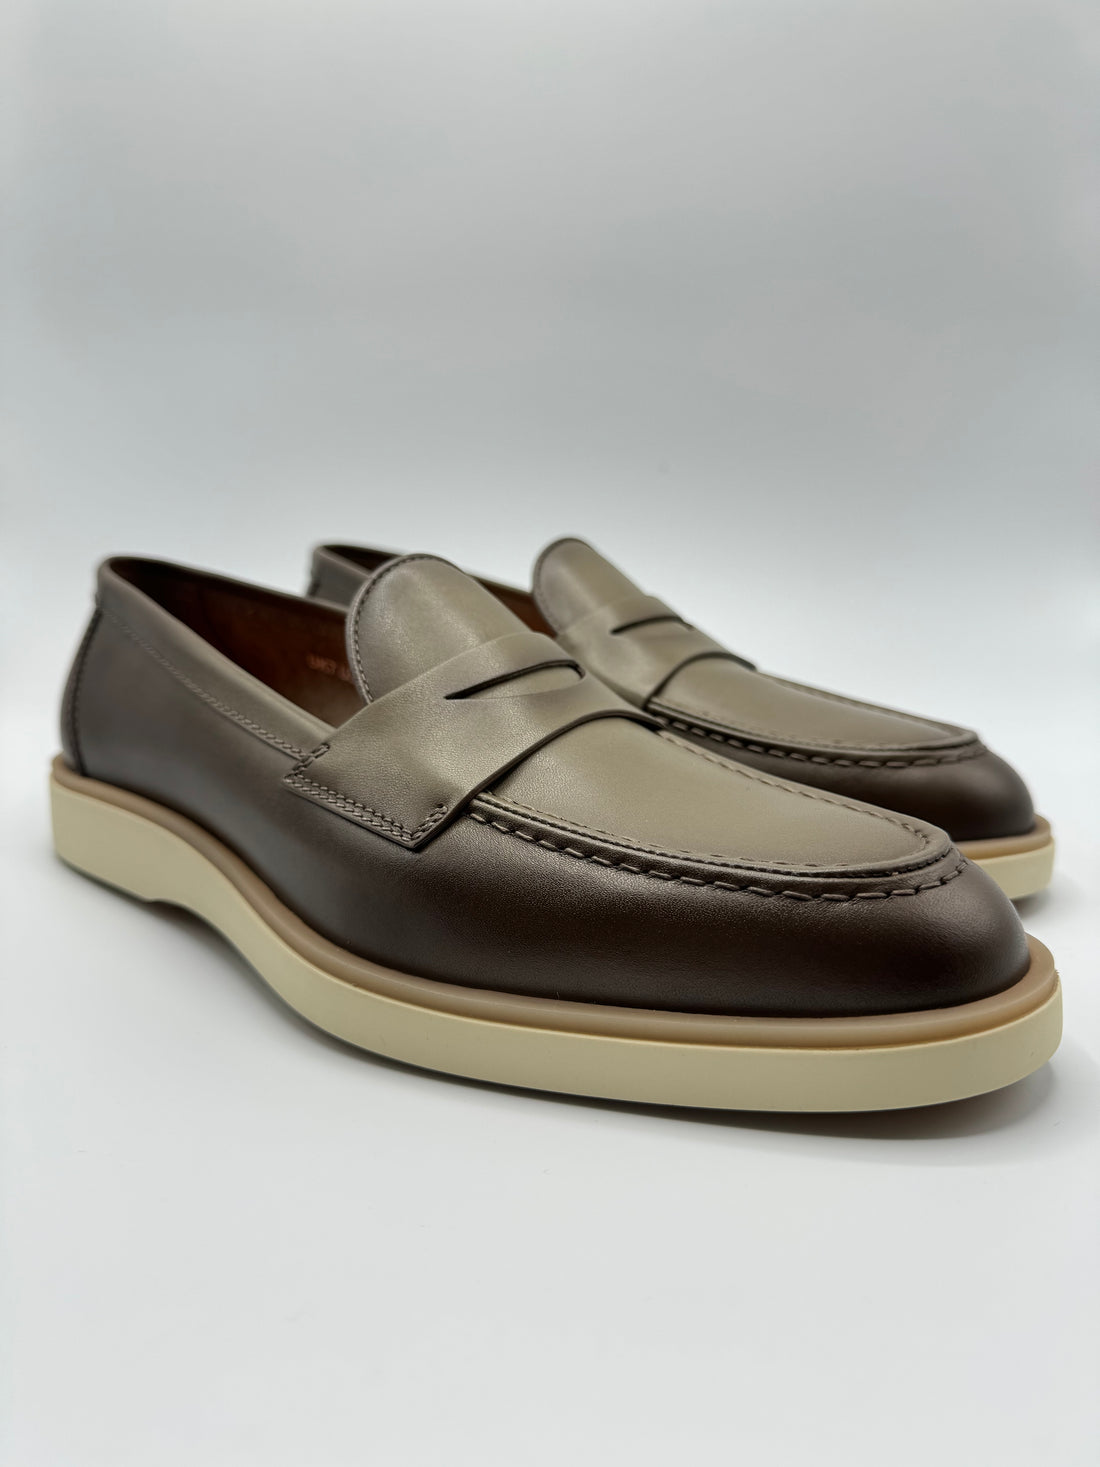 Santoni - Leather Loafer Shoe